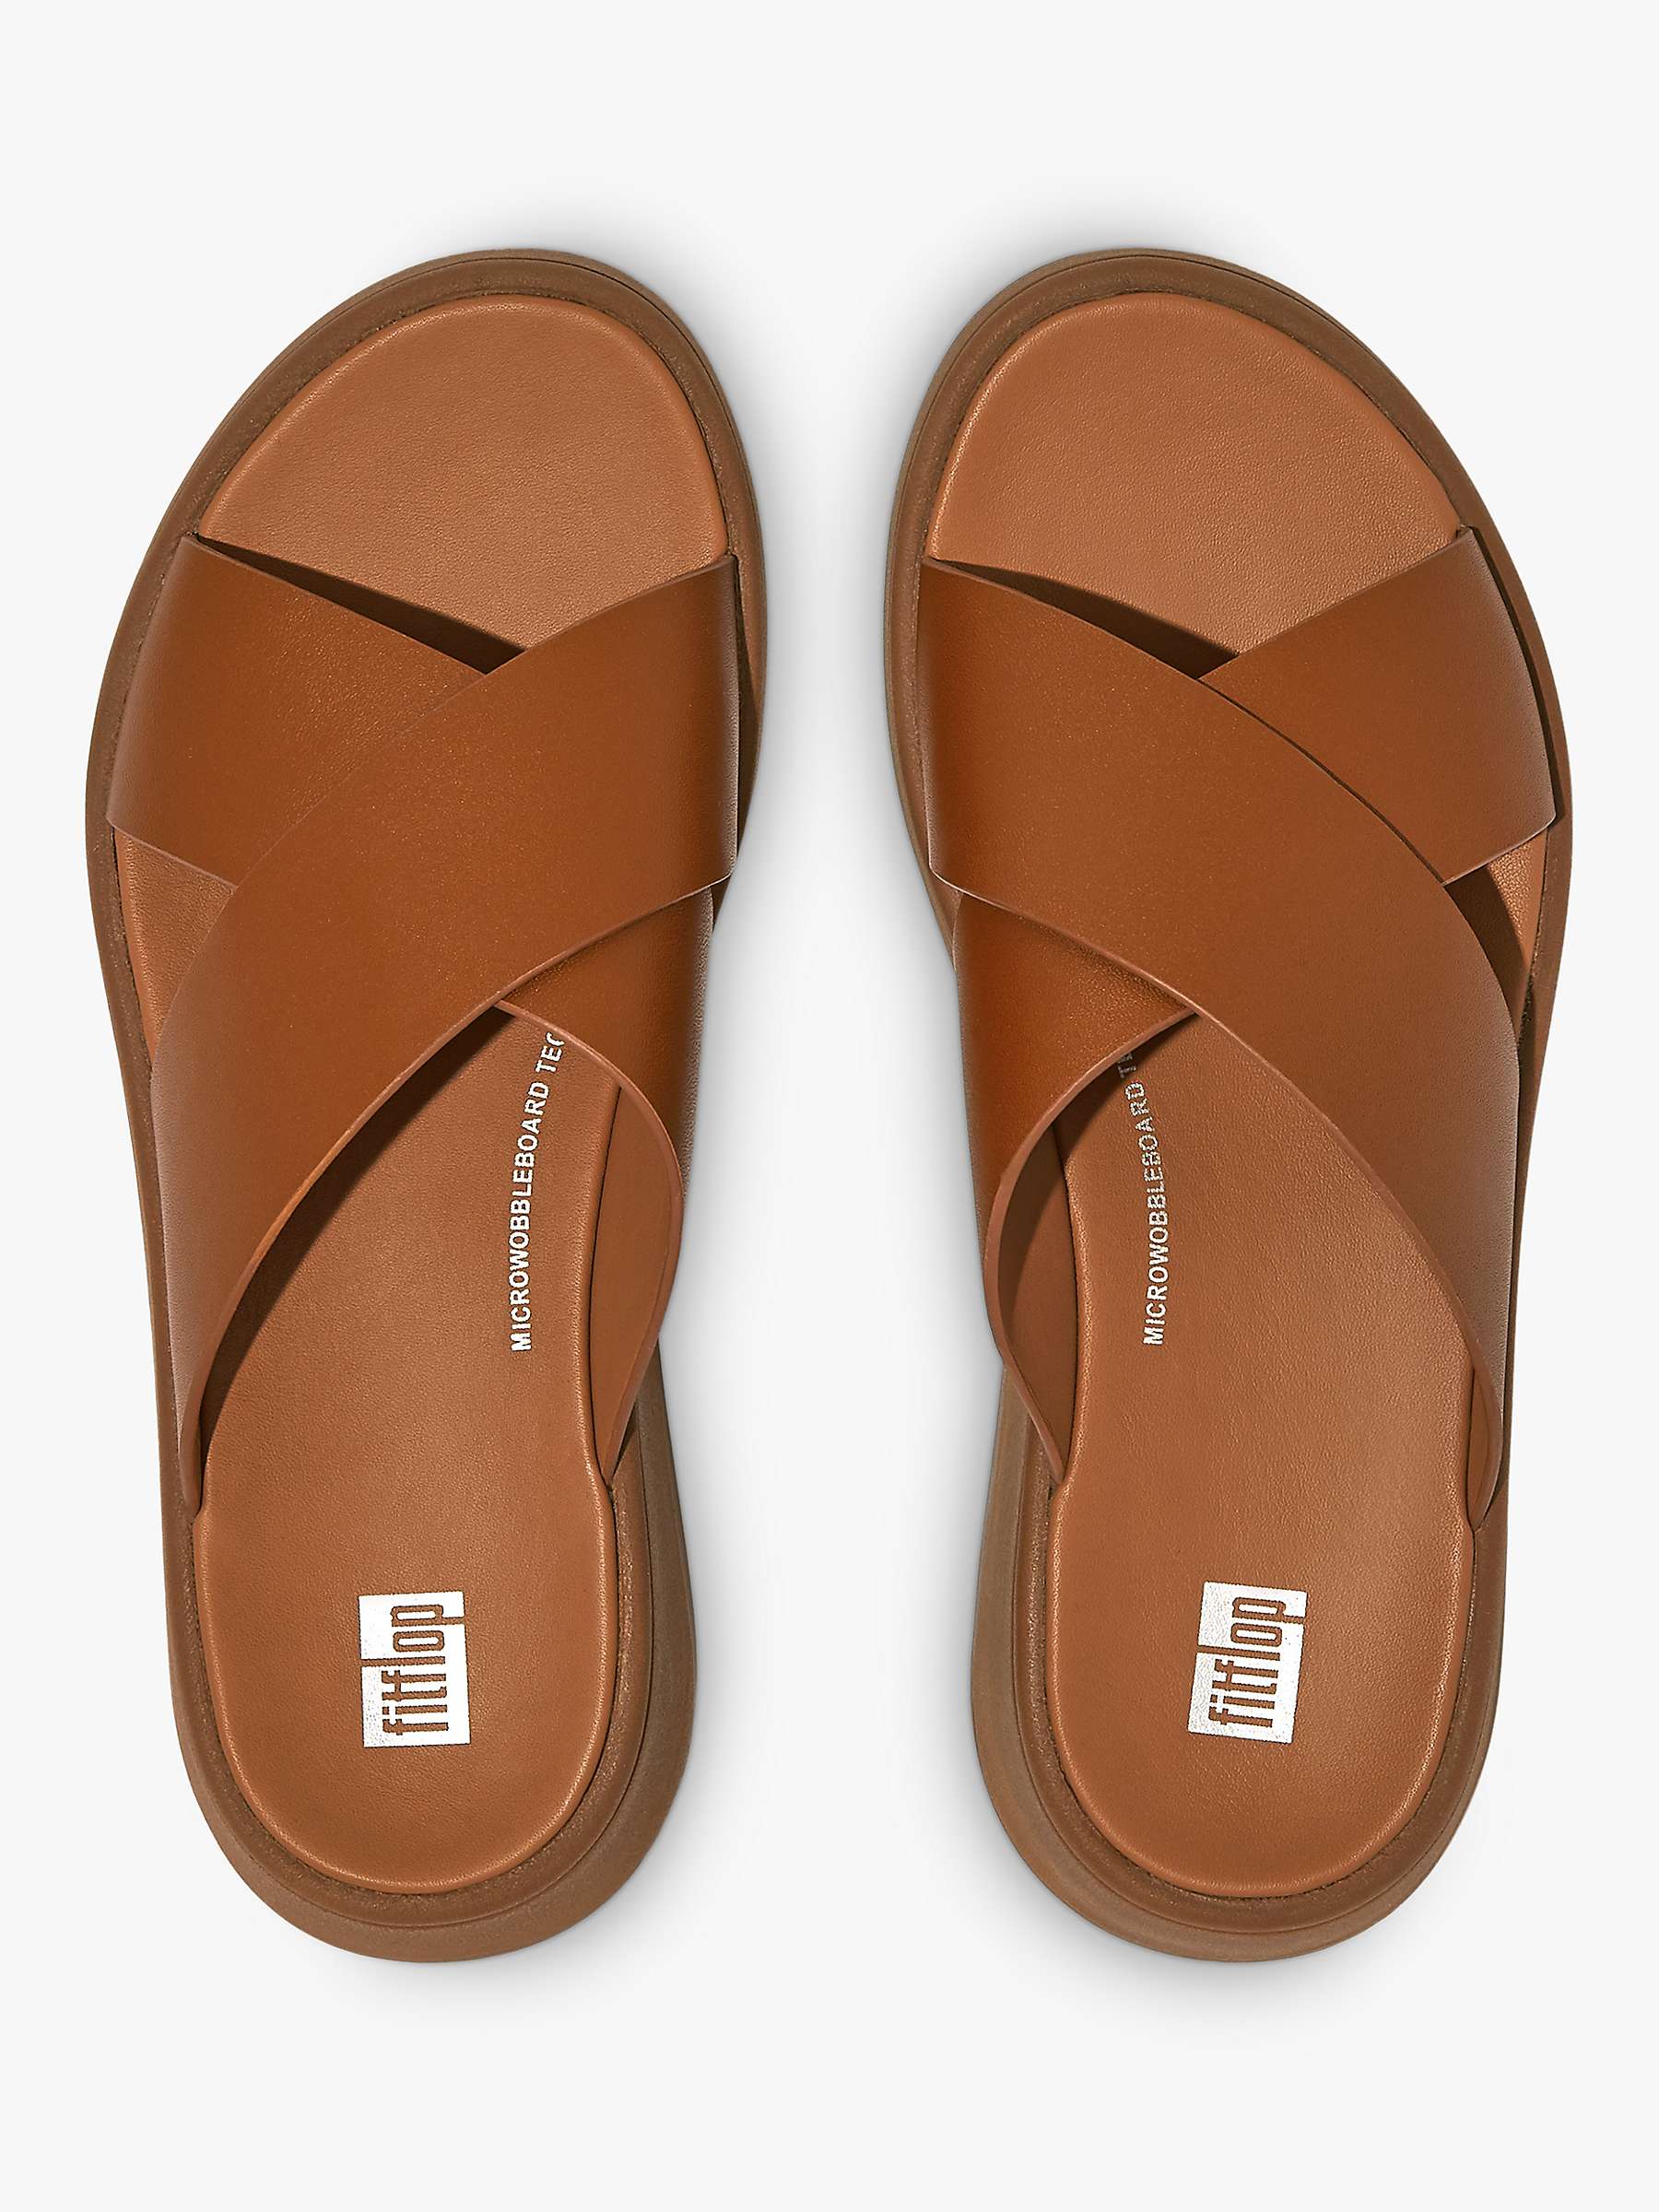 Buy FitFlop F-Mode Leather Cross Flatform Slides Sandals, Light Tan Online at johnlewis.com